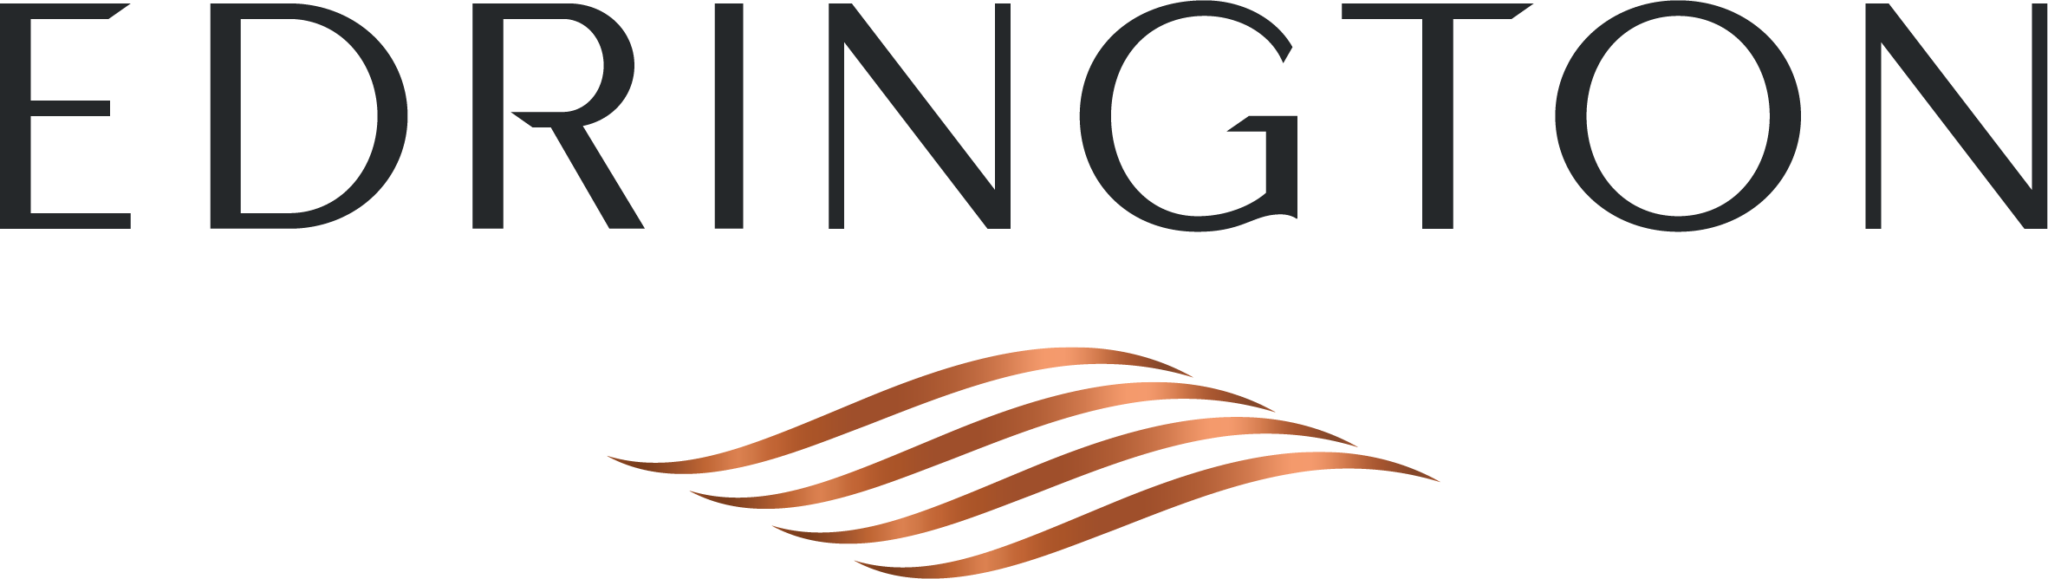 Edrington-Primary-Logo-On-Screen-Full-Colour-Positive.png